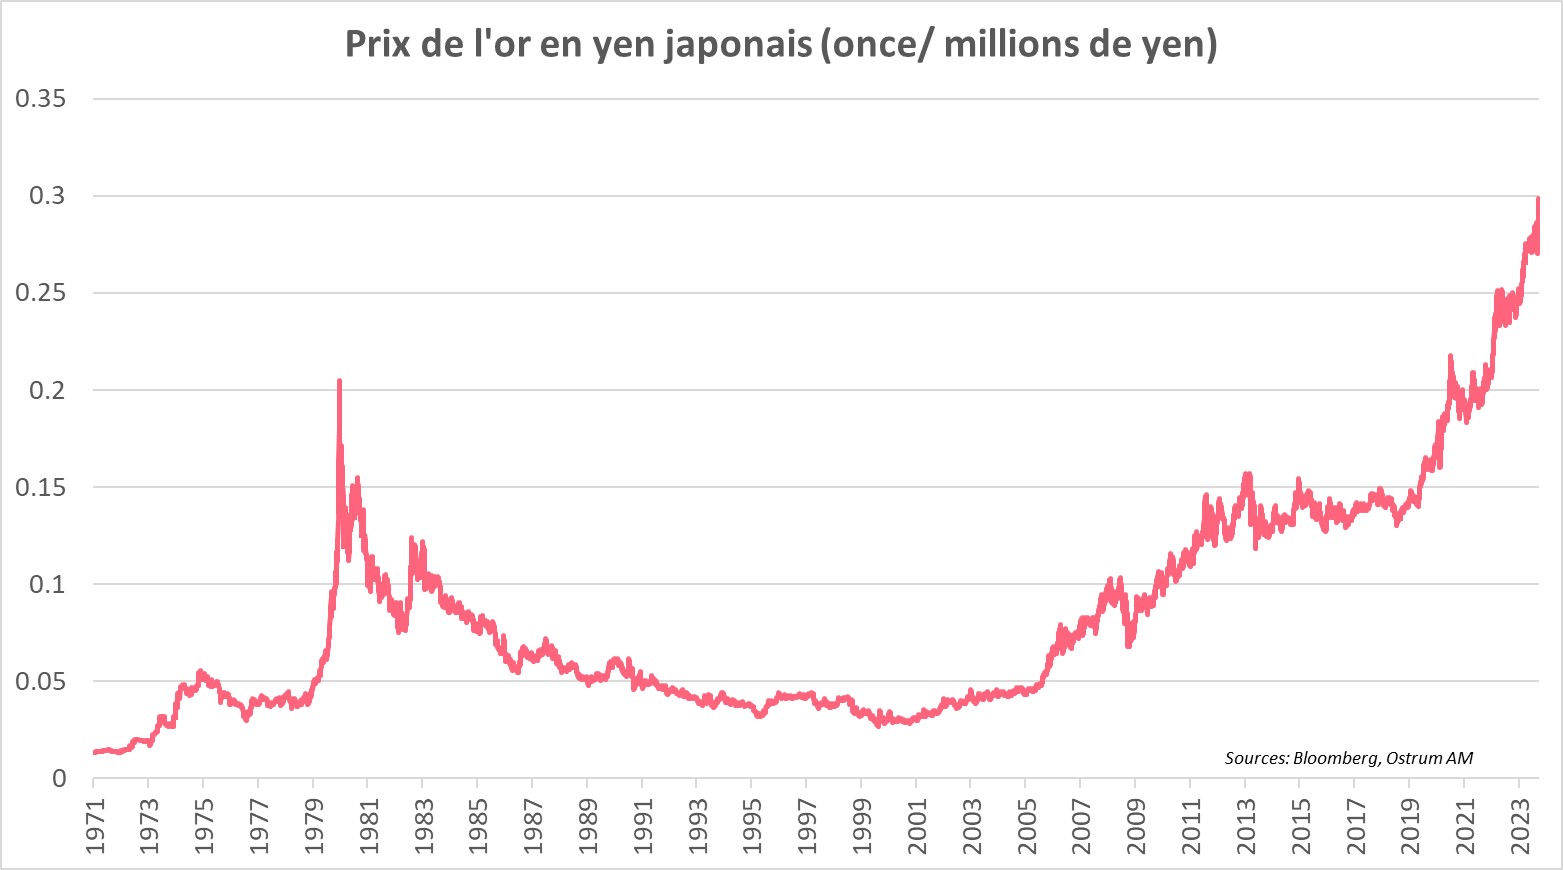 prix-de-l-or-en-yen-japonais-once-million-de-yen